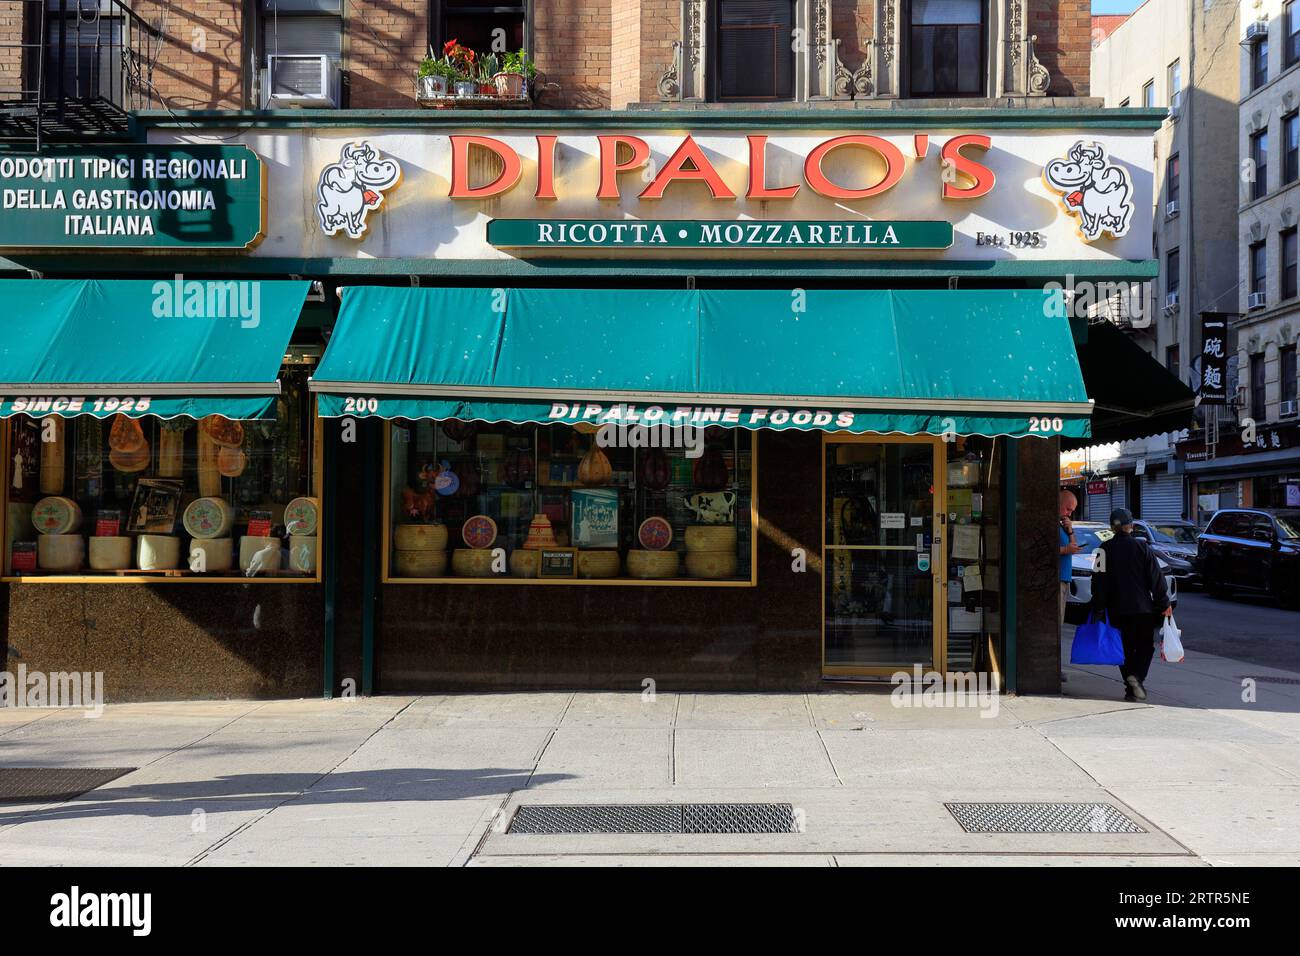 Di Palo's fine Foods, 200 Grand St, New York. Magazzino di New York di un negozio di formaggi e alimentari italiani a Little Italy/Chinatown di Manhattan. Foto Stock